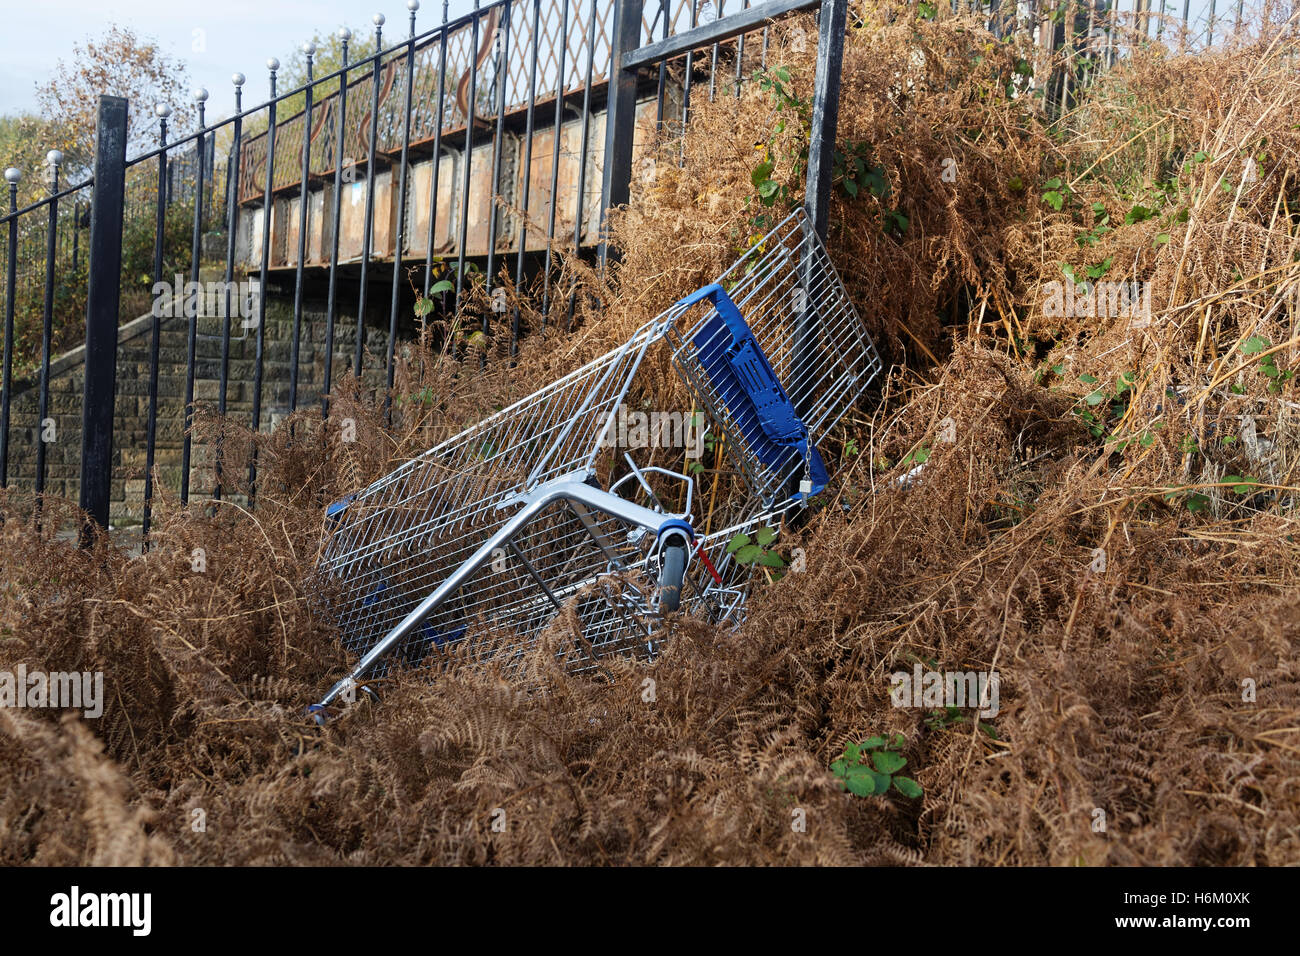 Verworfen, gestohlenen oder verlorenen Einkaufswagen drolly Supermarkt Korb in grasbewachsenen Hügel Stockfoto